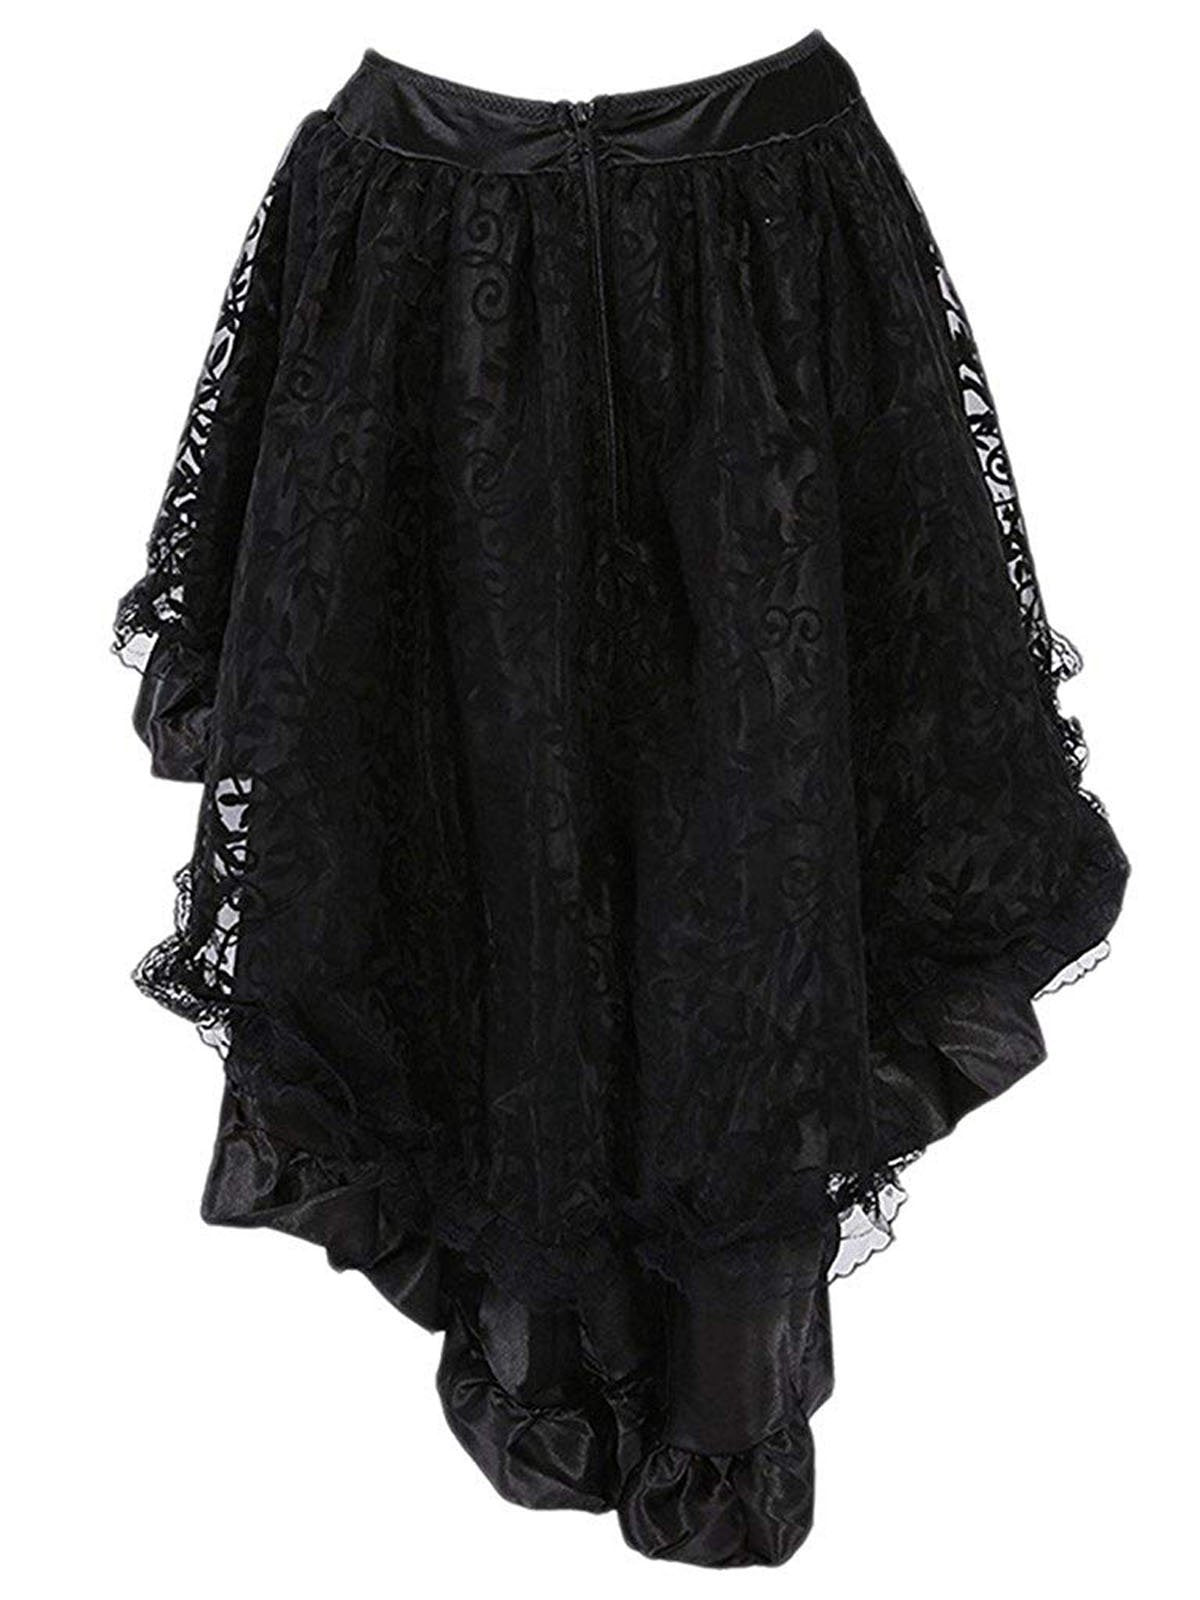 Halloween Steampunk Gothic Skirt